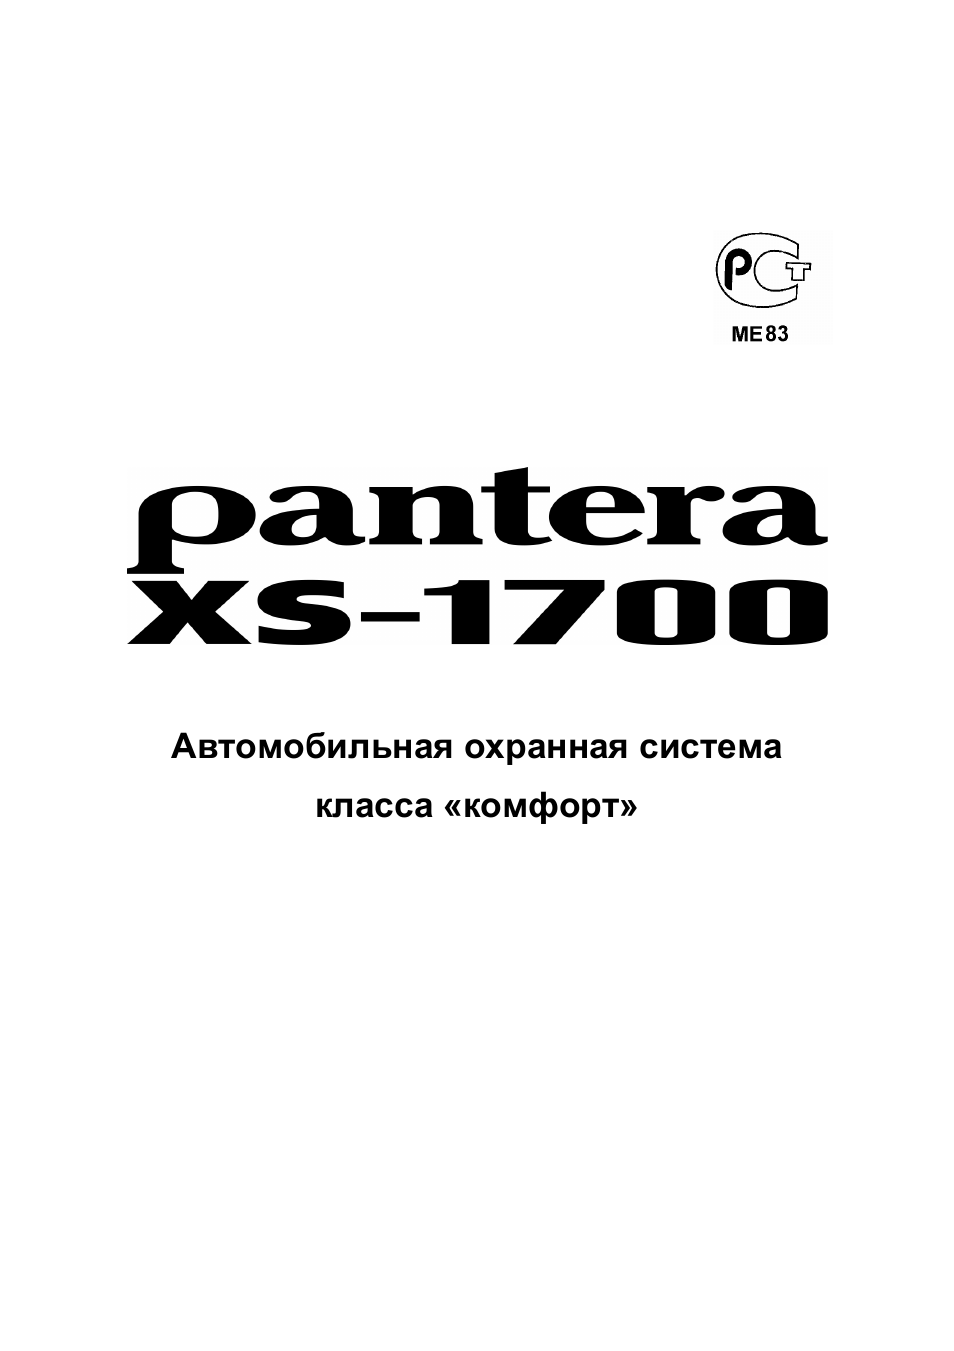 Xs 2600 пантера инструкция